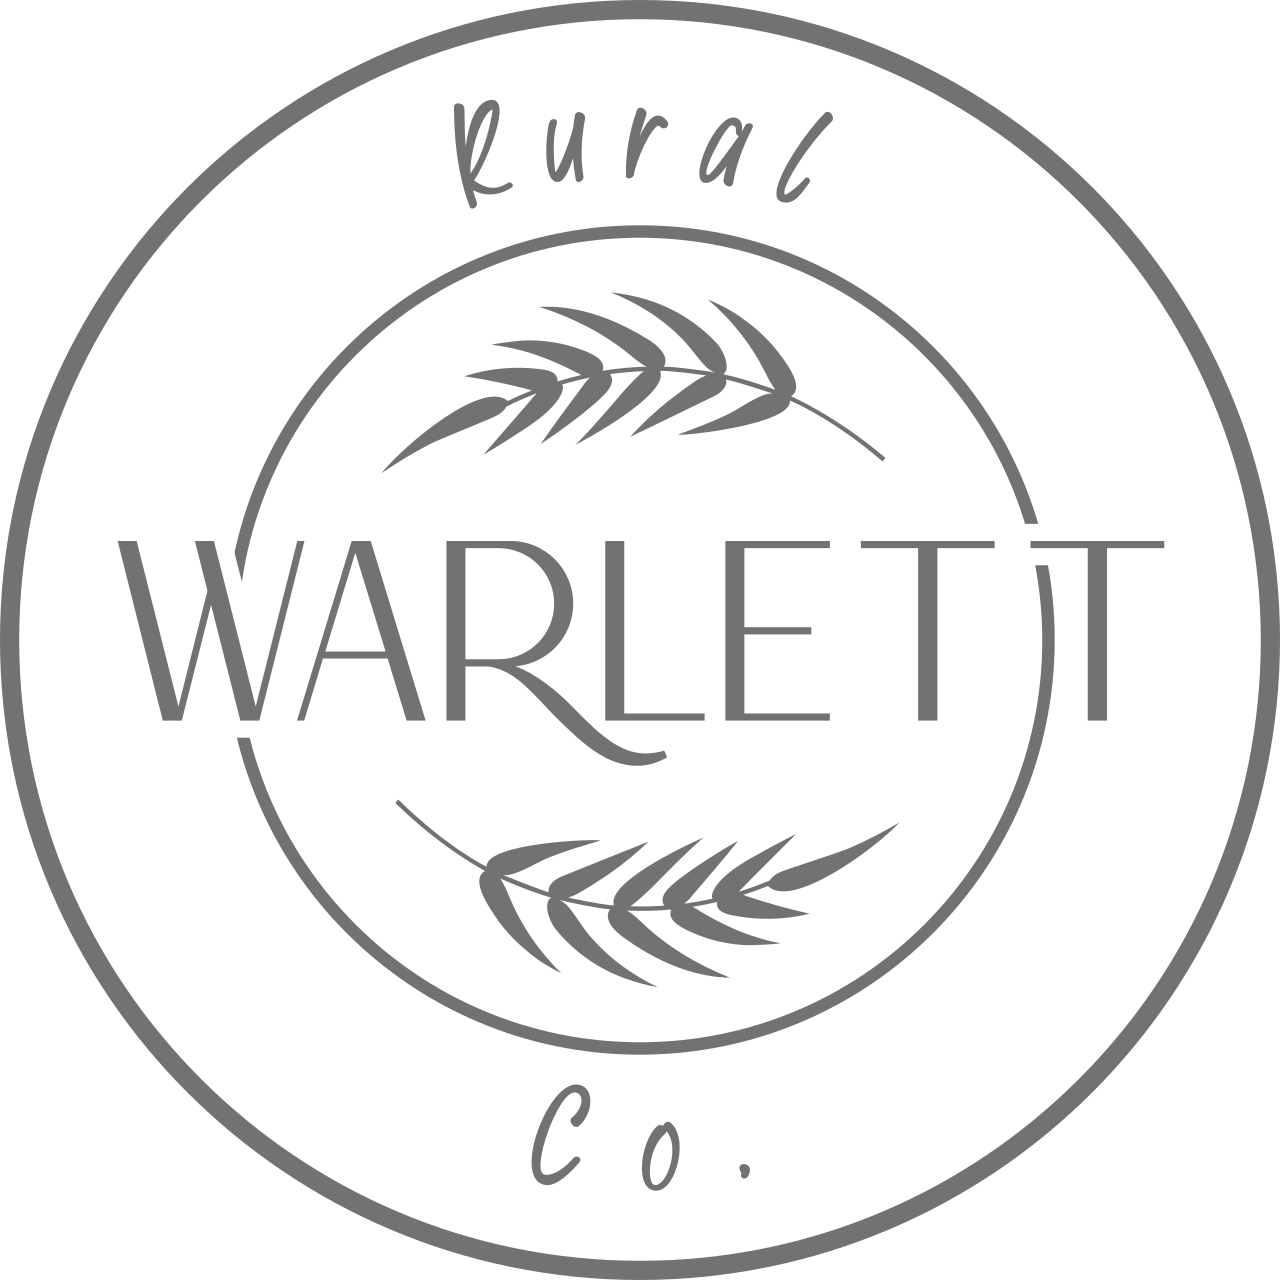 WARLETT's logo